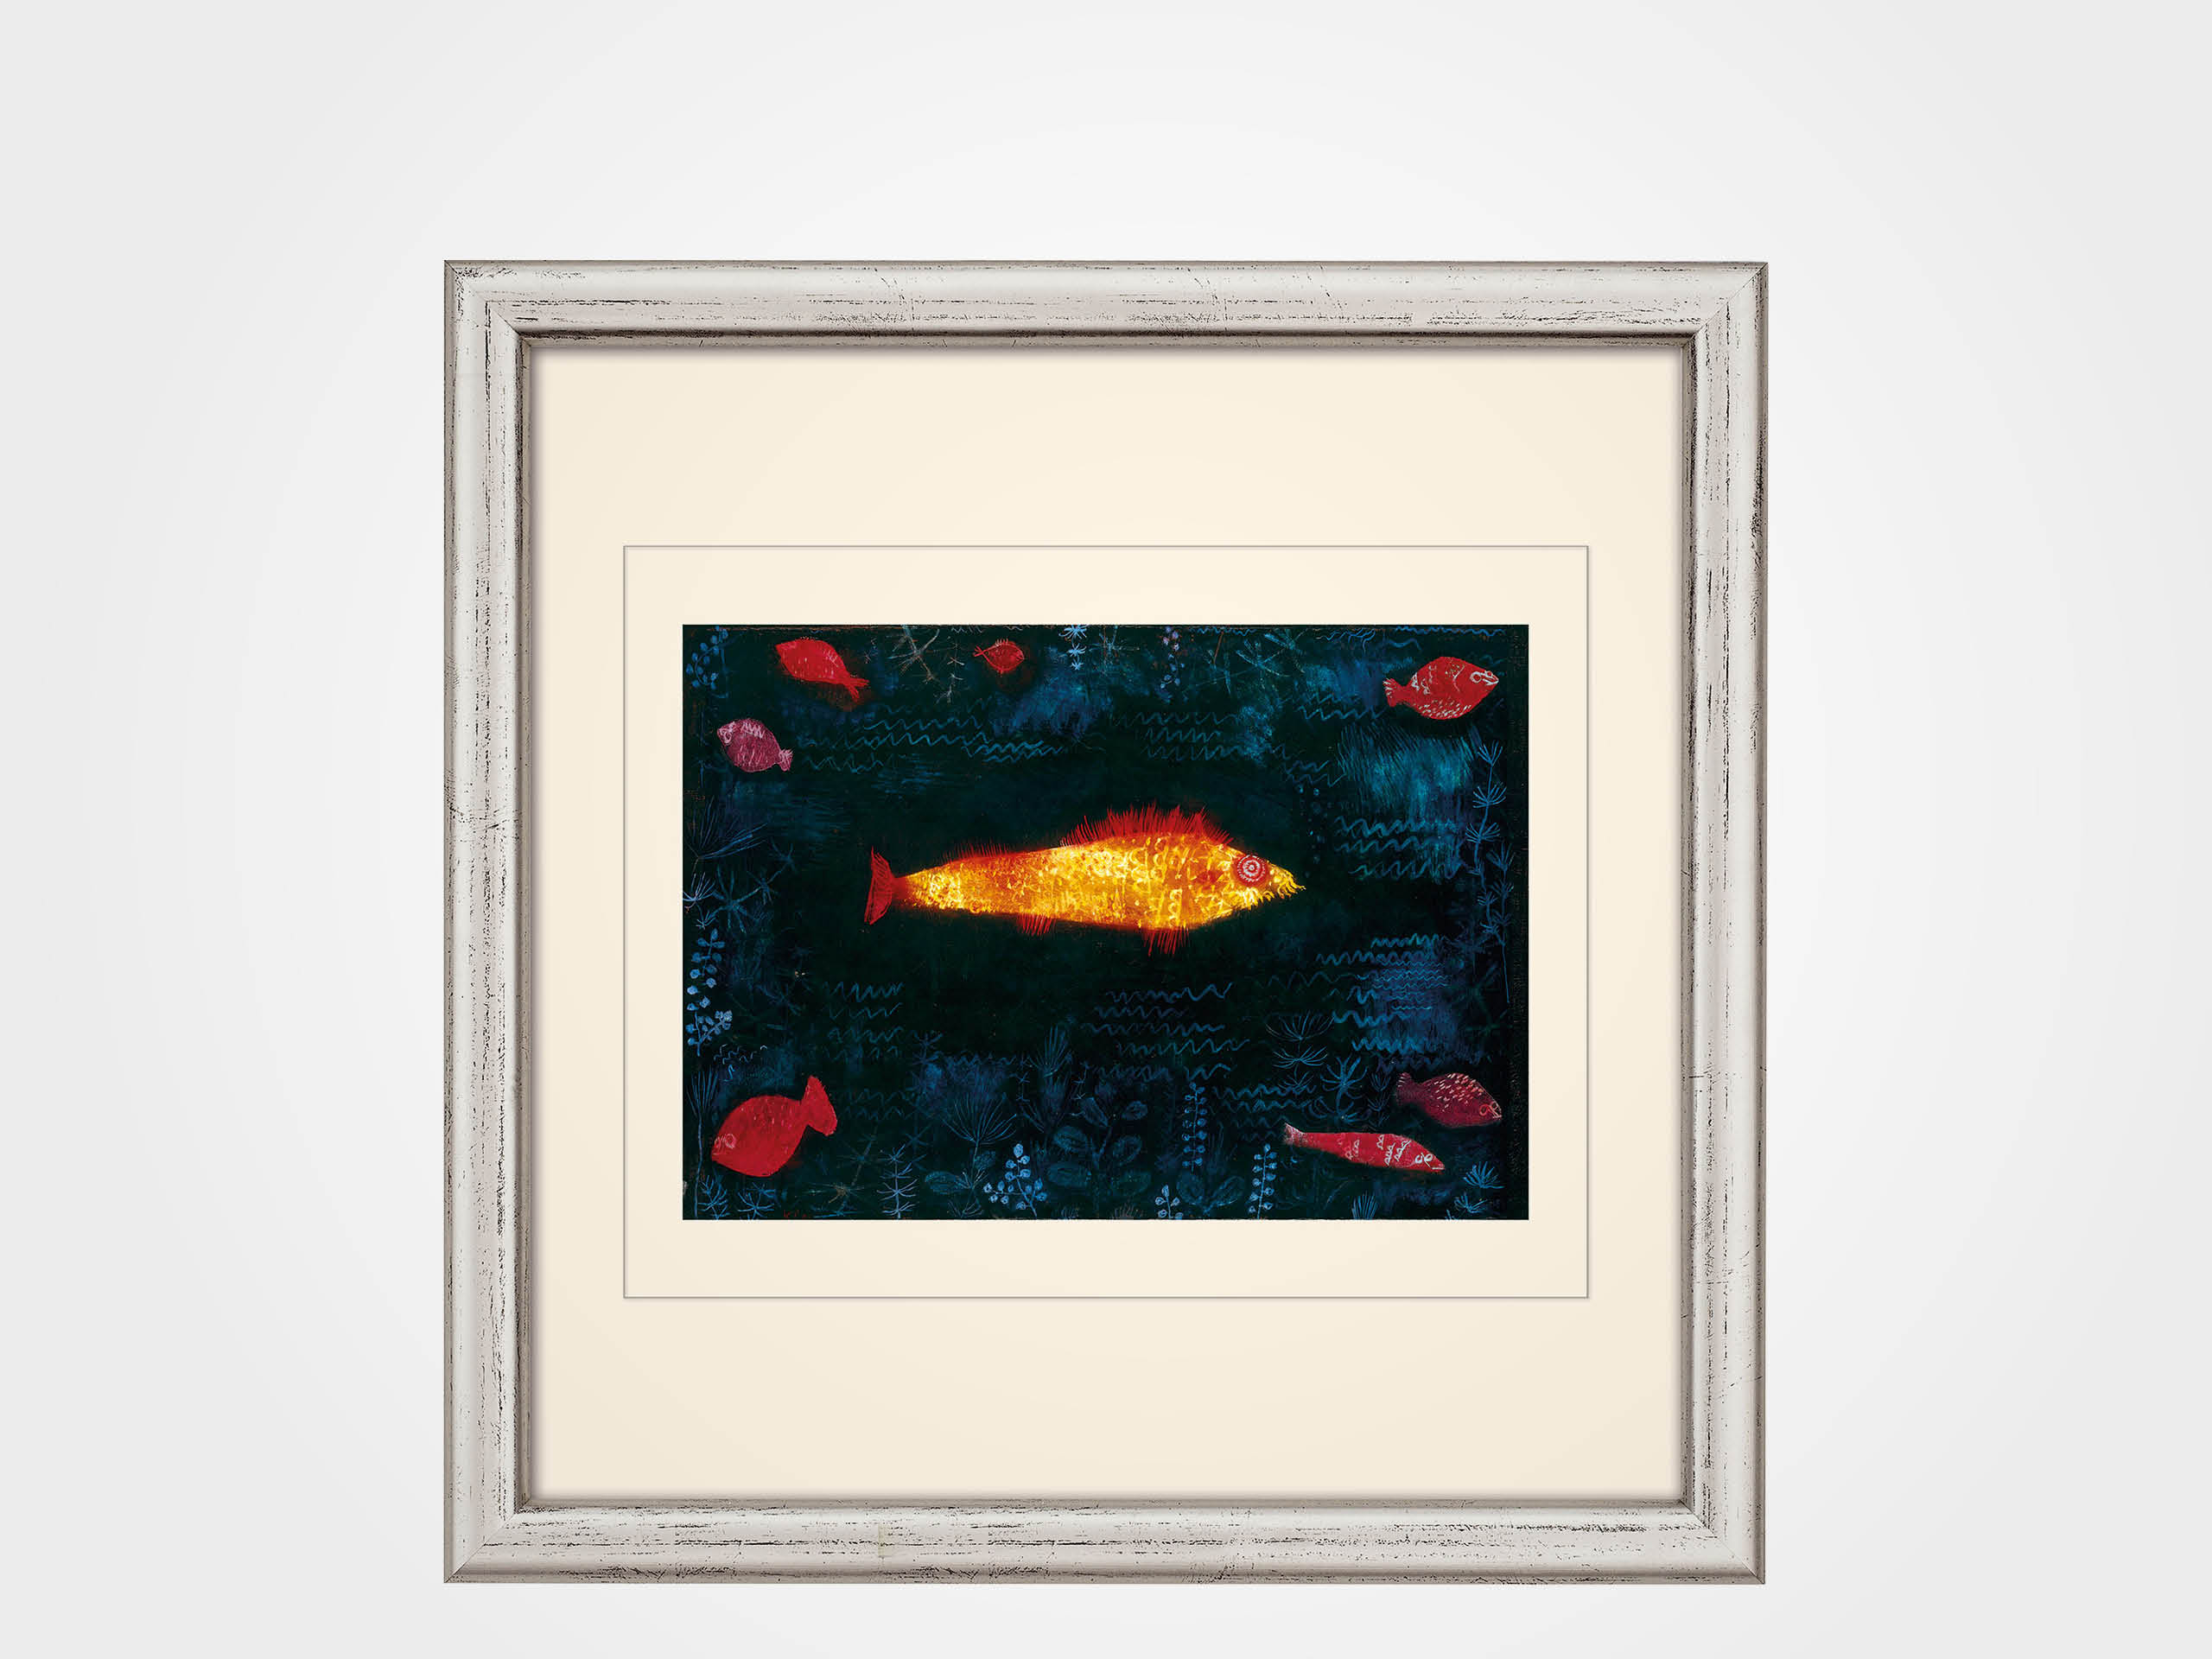 Paul Klee: Bild "Der goldene Fisch" (1925), gerahmt